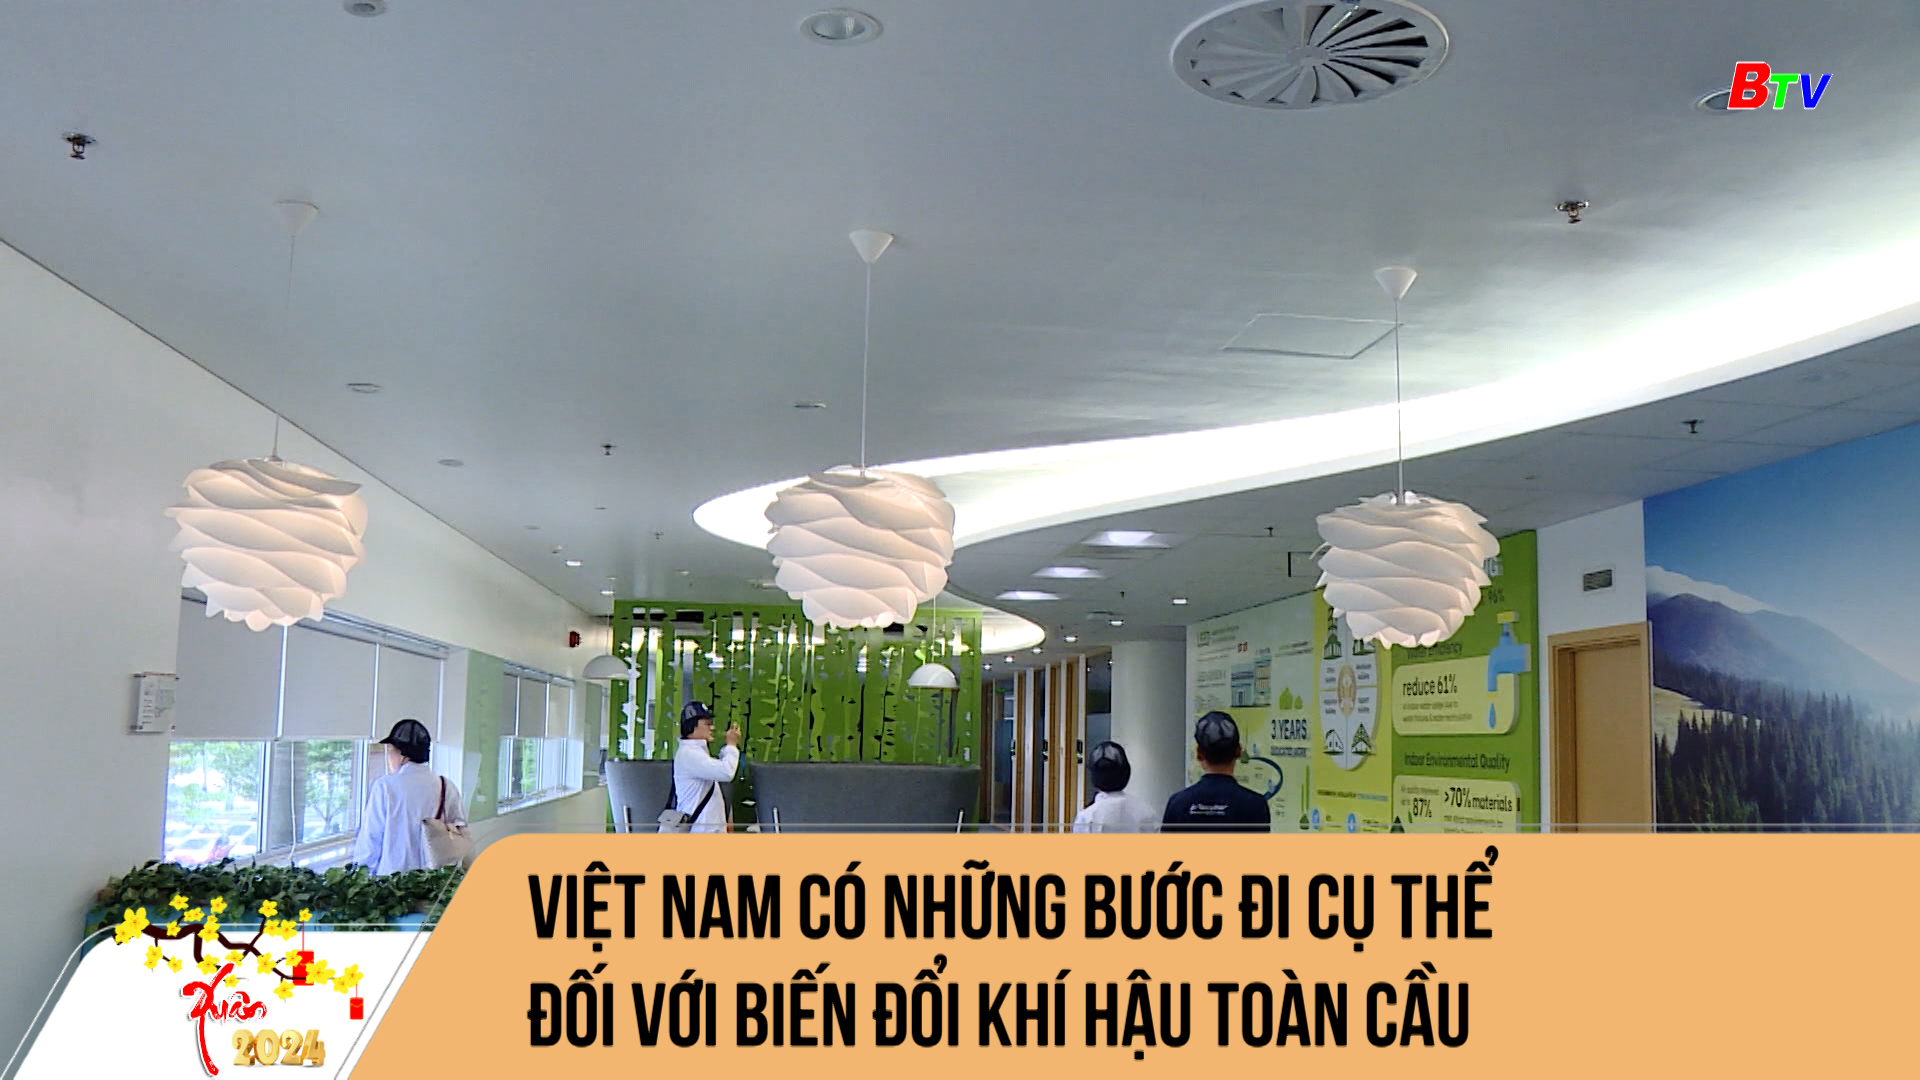 Việt Nam có những hành động cụ thể đối với biến đổi khí hậu toàn cầu